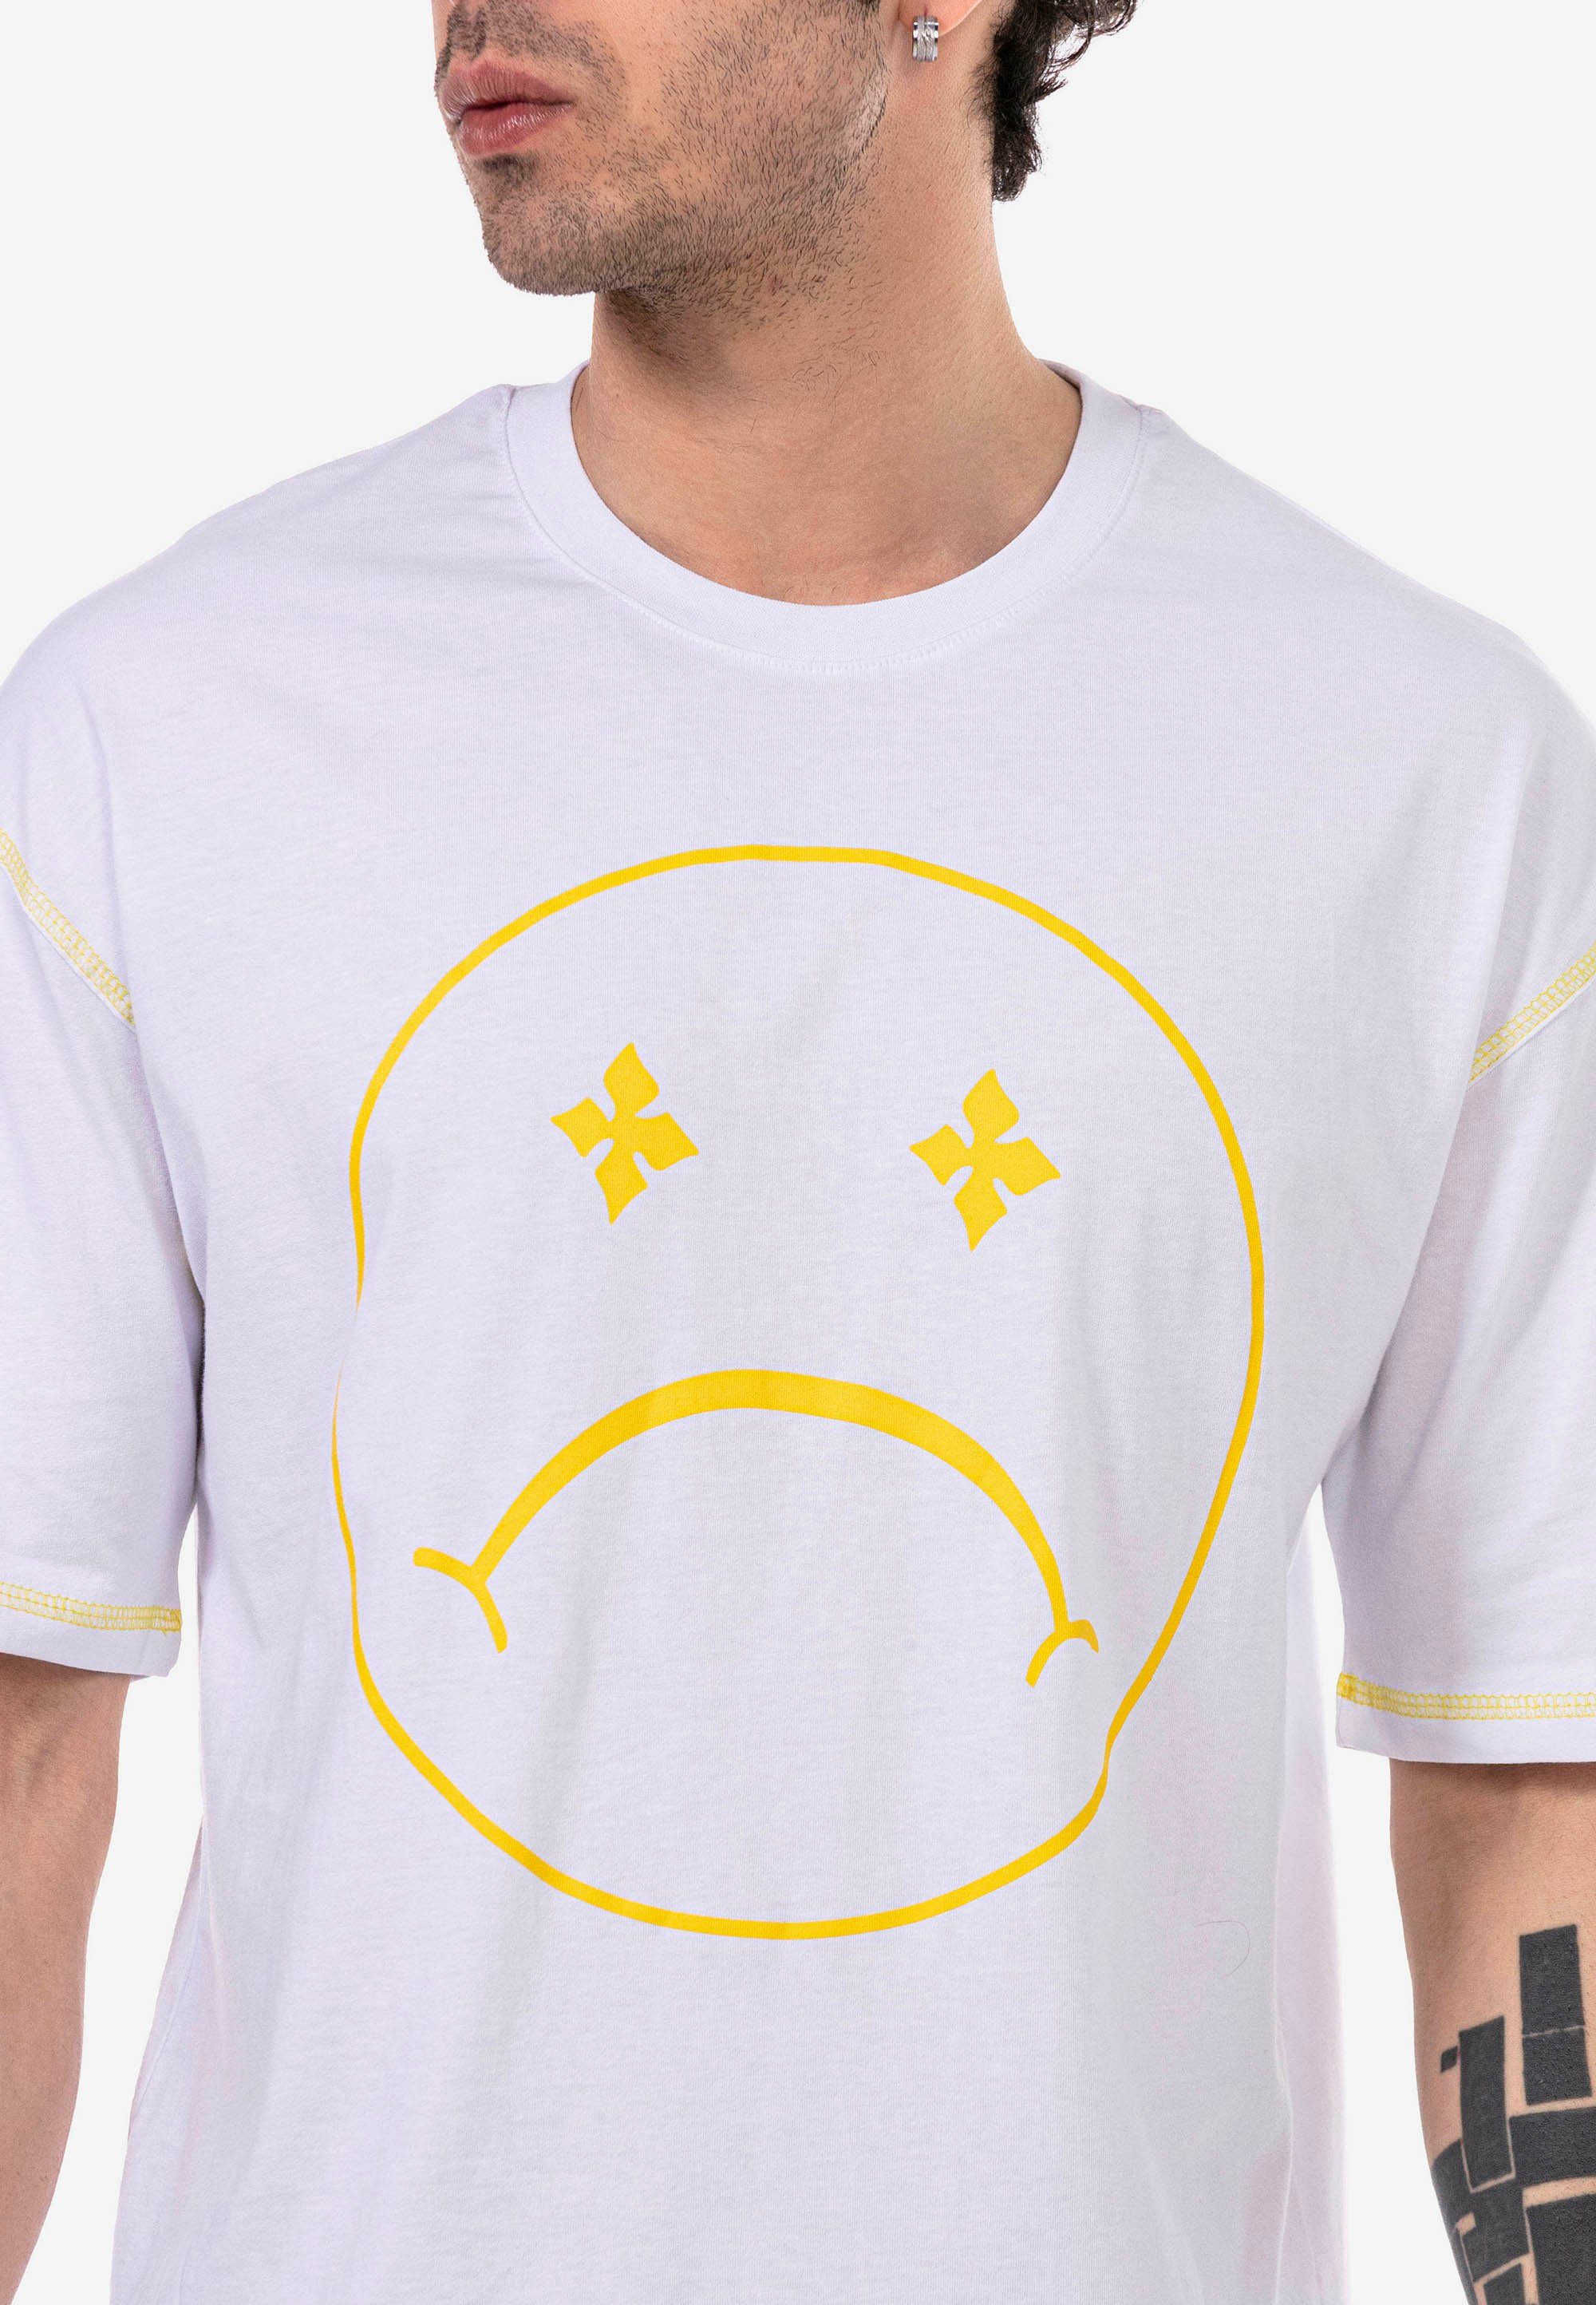 Sad Aberdeen modischem RedBridge mit T-Shirt weiß Smiley-Frontprint